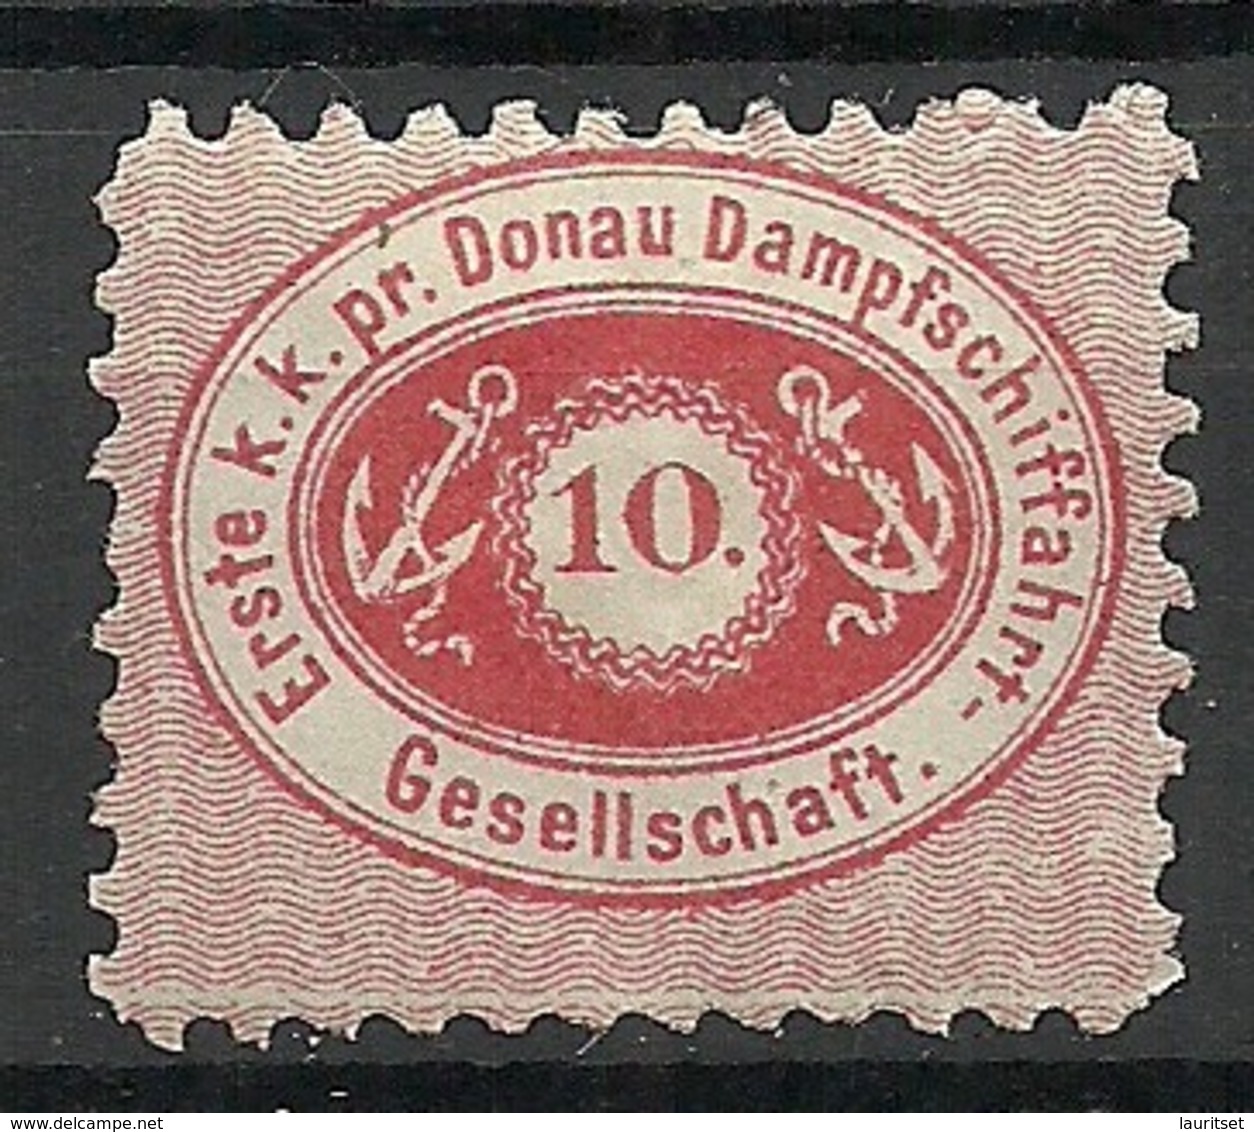 AUSTRIA Österreich 1870 Donau Dampferschiffahrt-Gesellschaft Perf 9 1/2 Michel 4 * - Ungebraucht